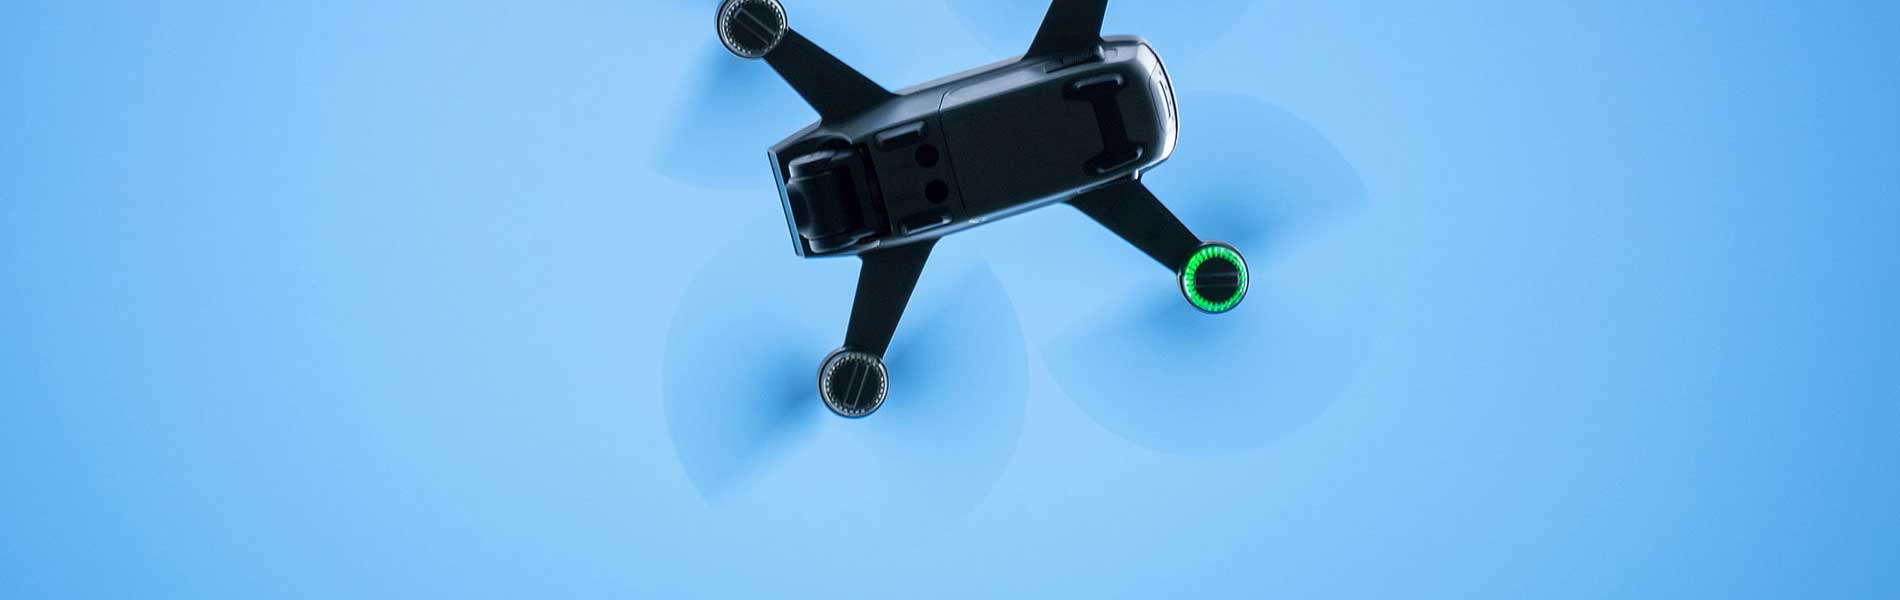 Réalisation vidéo drone